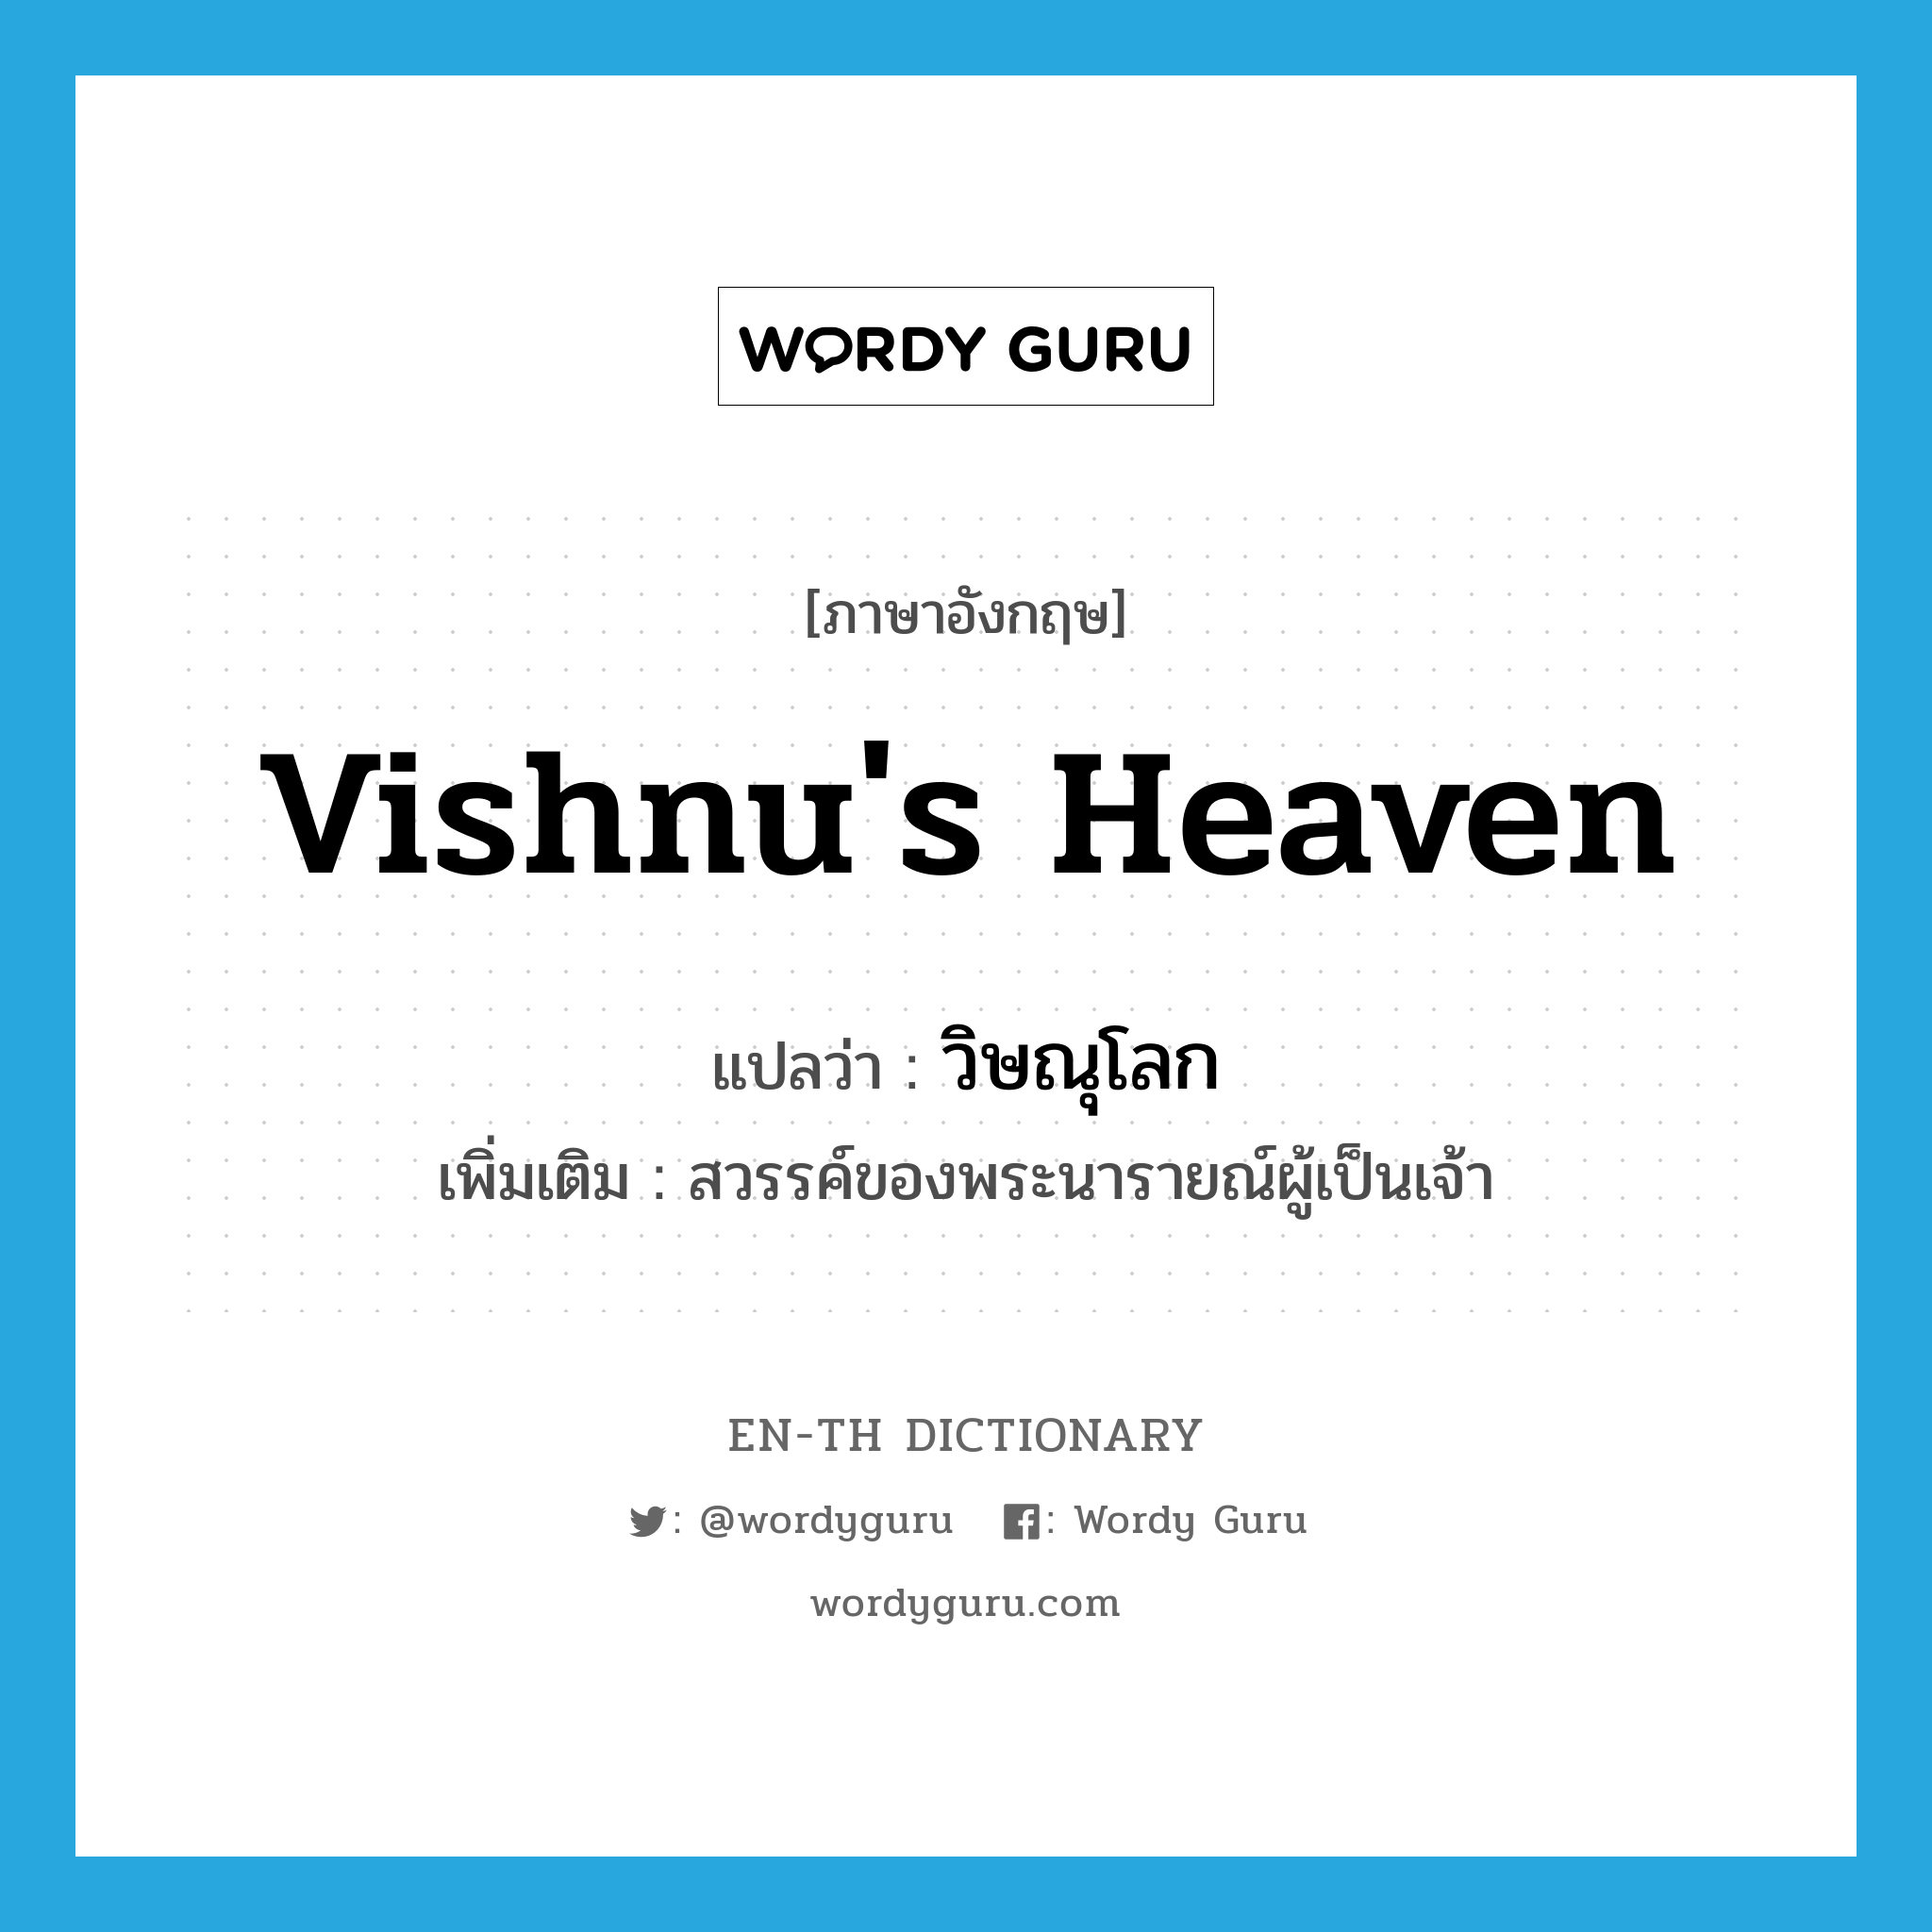 วิษณุโลก ภาษาอังกฤษ?, คำศัพท์ภาษาอังกฤษ วิษณุโลก แปลว่า Vishnu's heaven ประเภท N เพิ่มเติม สวรรค์ของพระนารายณ์ผู้เป็นเจ้า หมวด N